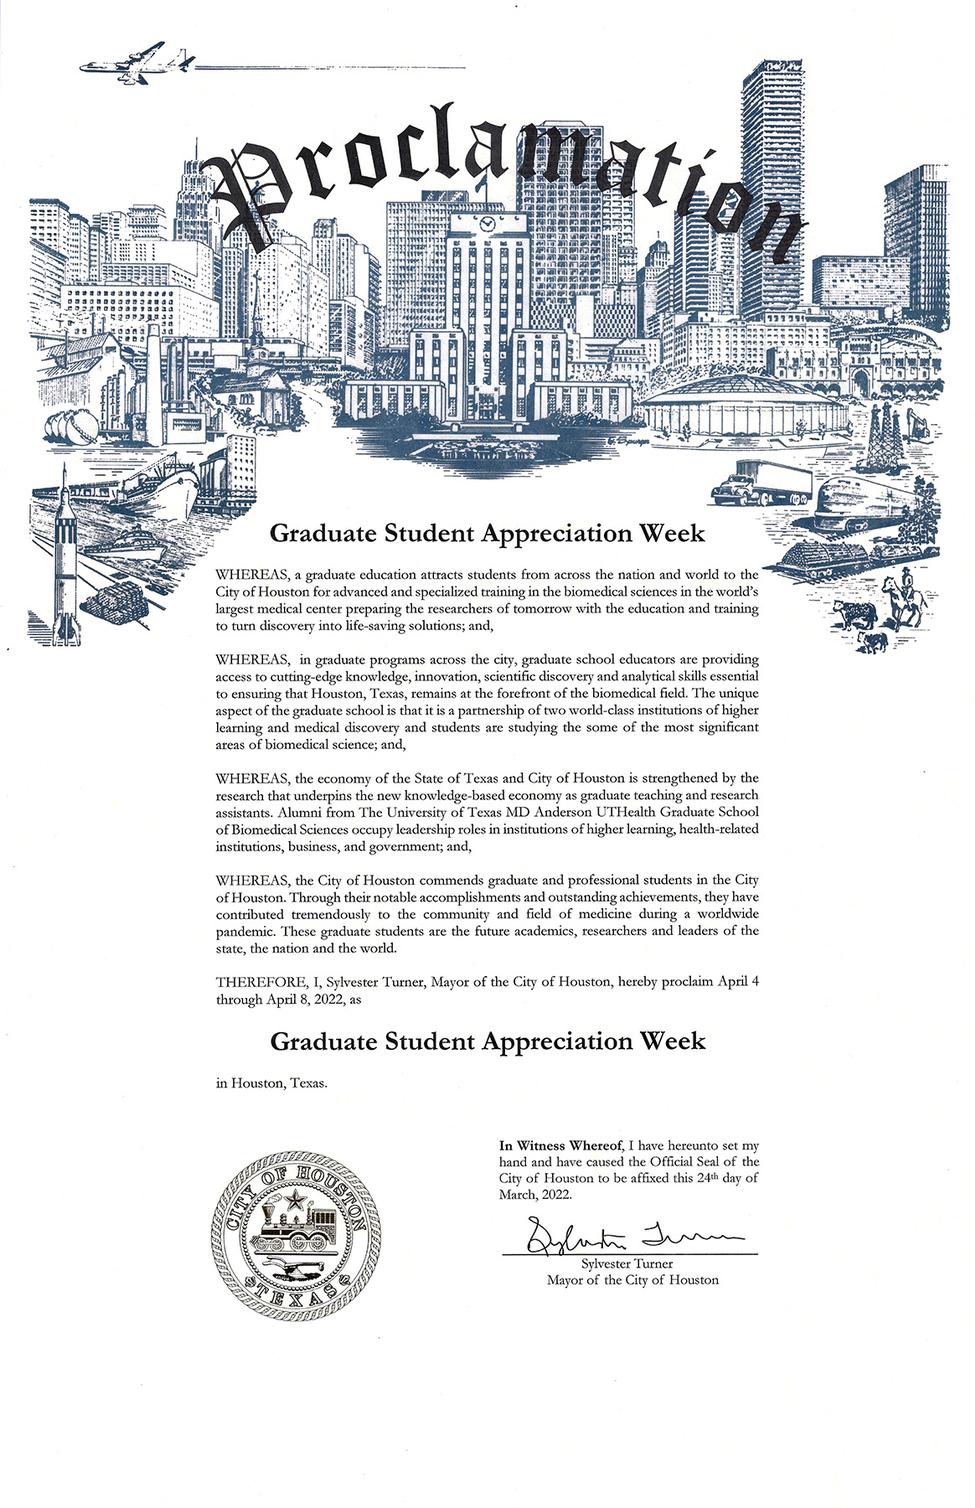 休斯顿市的GSAW宣言的图像